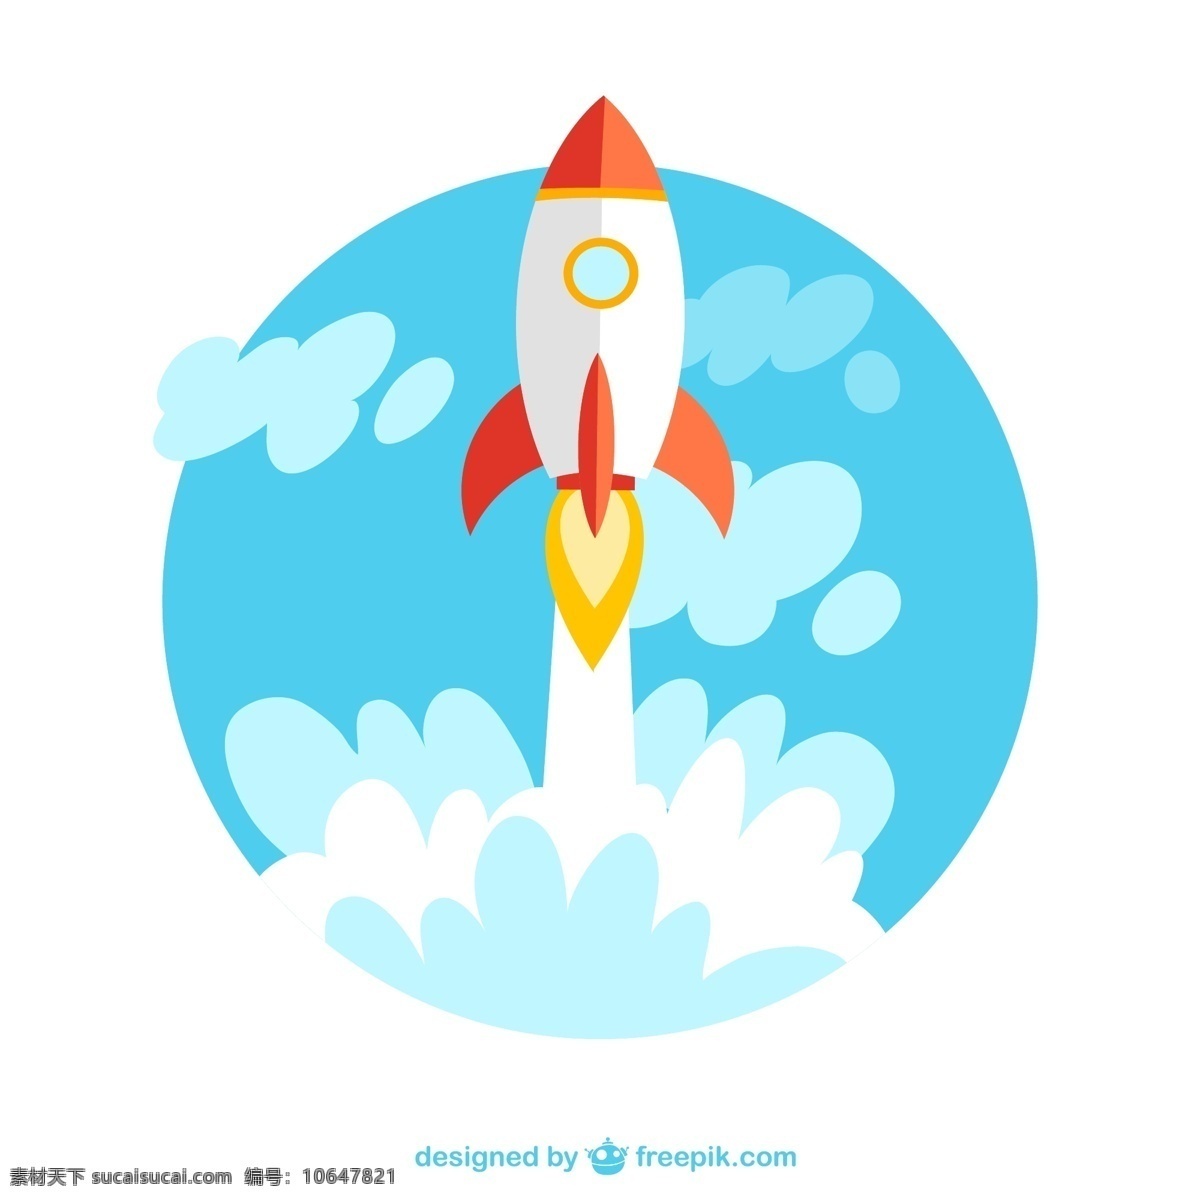 卡通 升空 火箭 矢量图 航天 航空 云朵 白云 速度 发射 交通工具 插画 背景 海报 画册 现代科技 白色